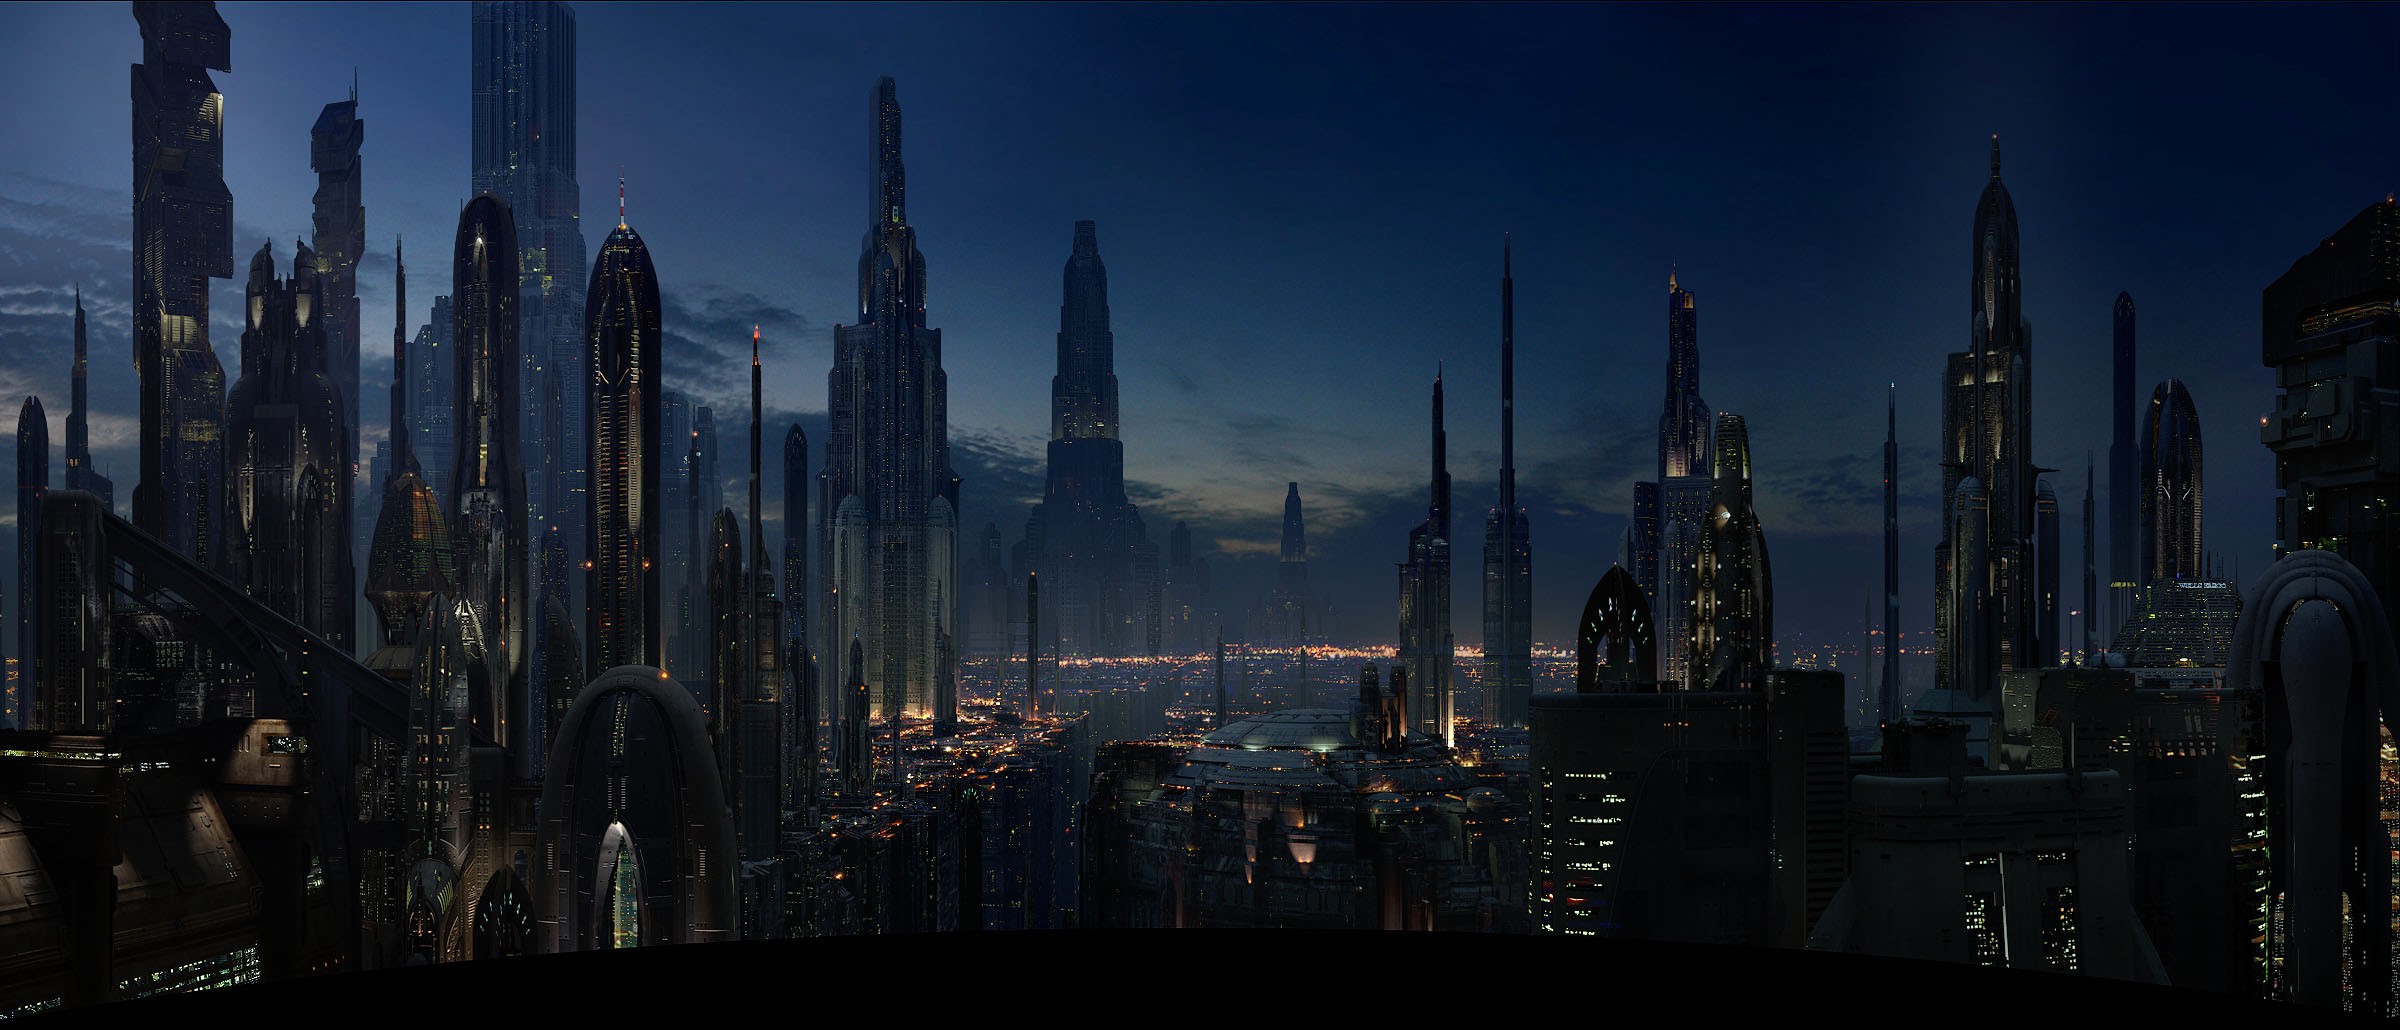 Movies Coruscant Star Wars Cityscape Futuristic City 2400x1030